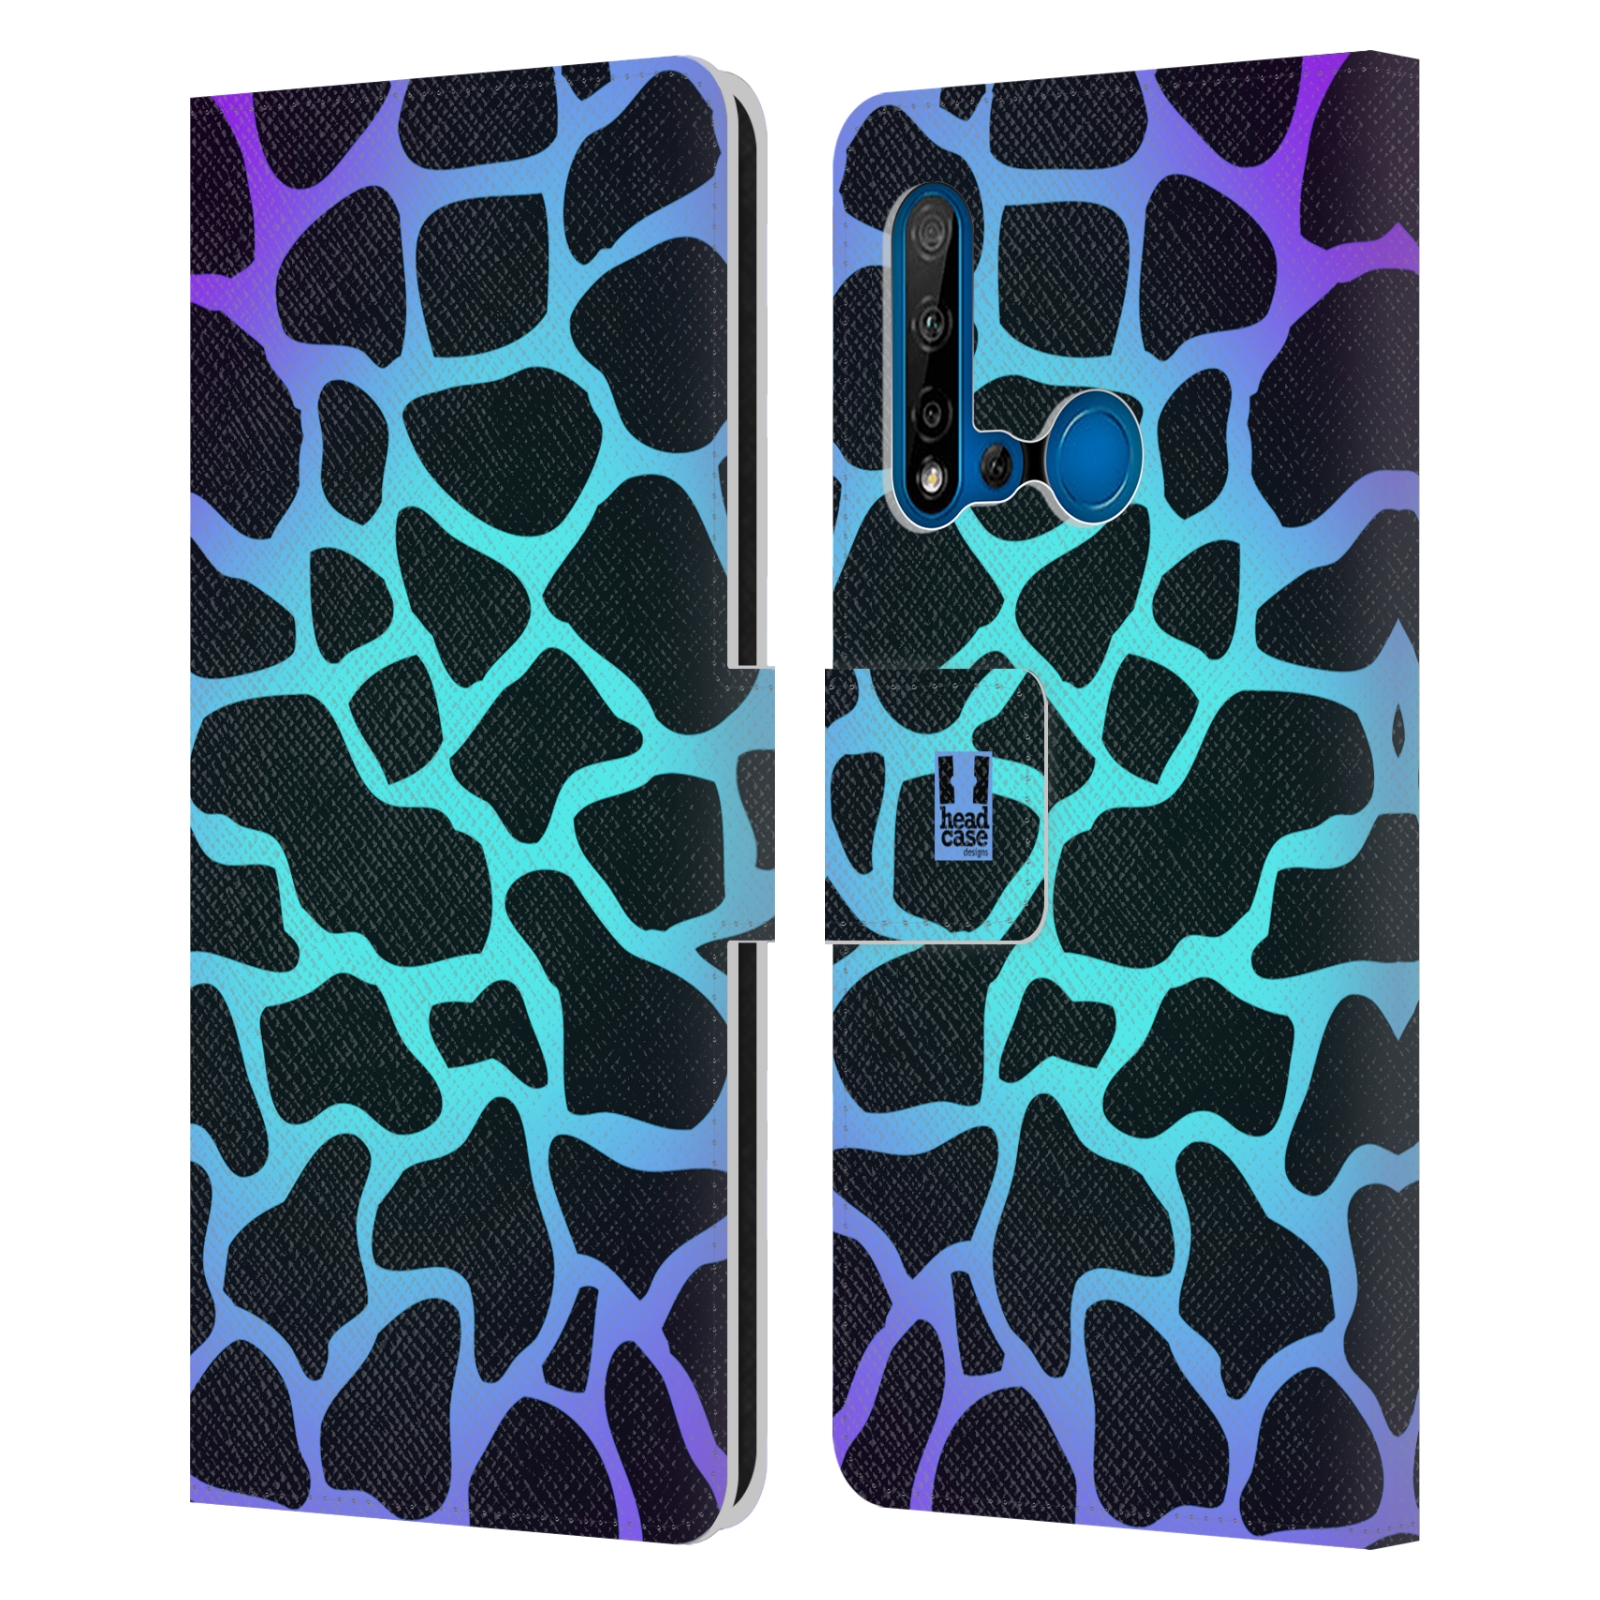 Pouzdro na mobil Huawei P20 LITE 2019 Zvířecí barevné vzory magická tyrkysova žirafa